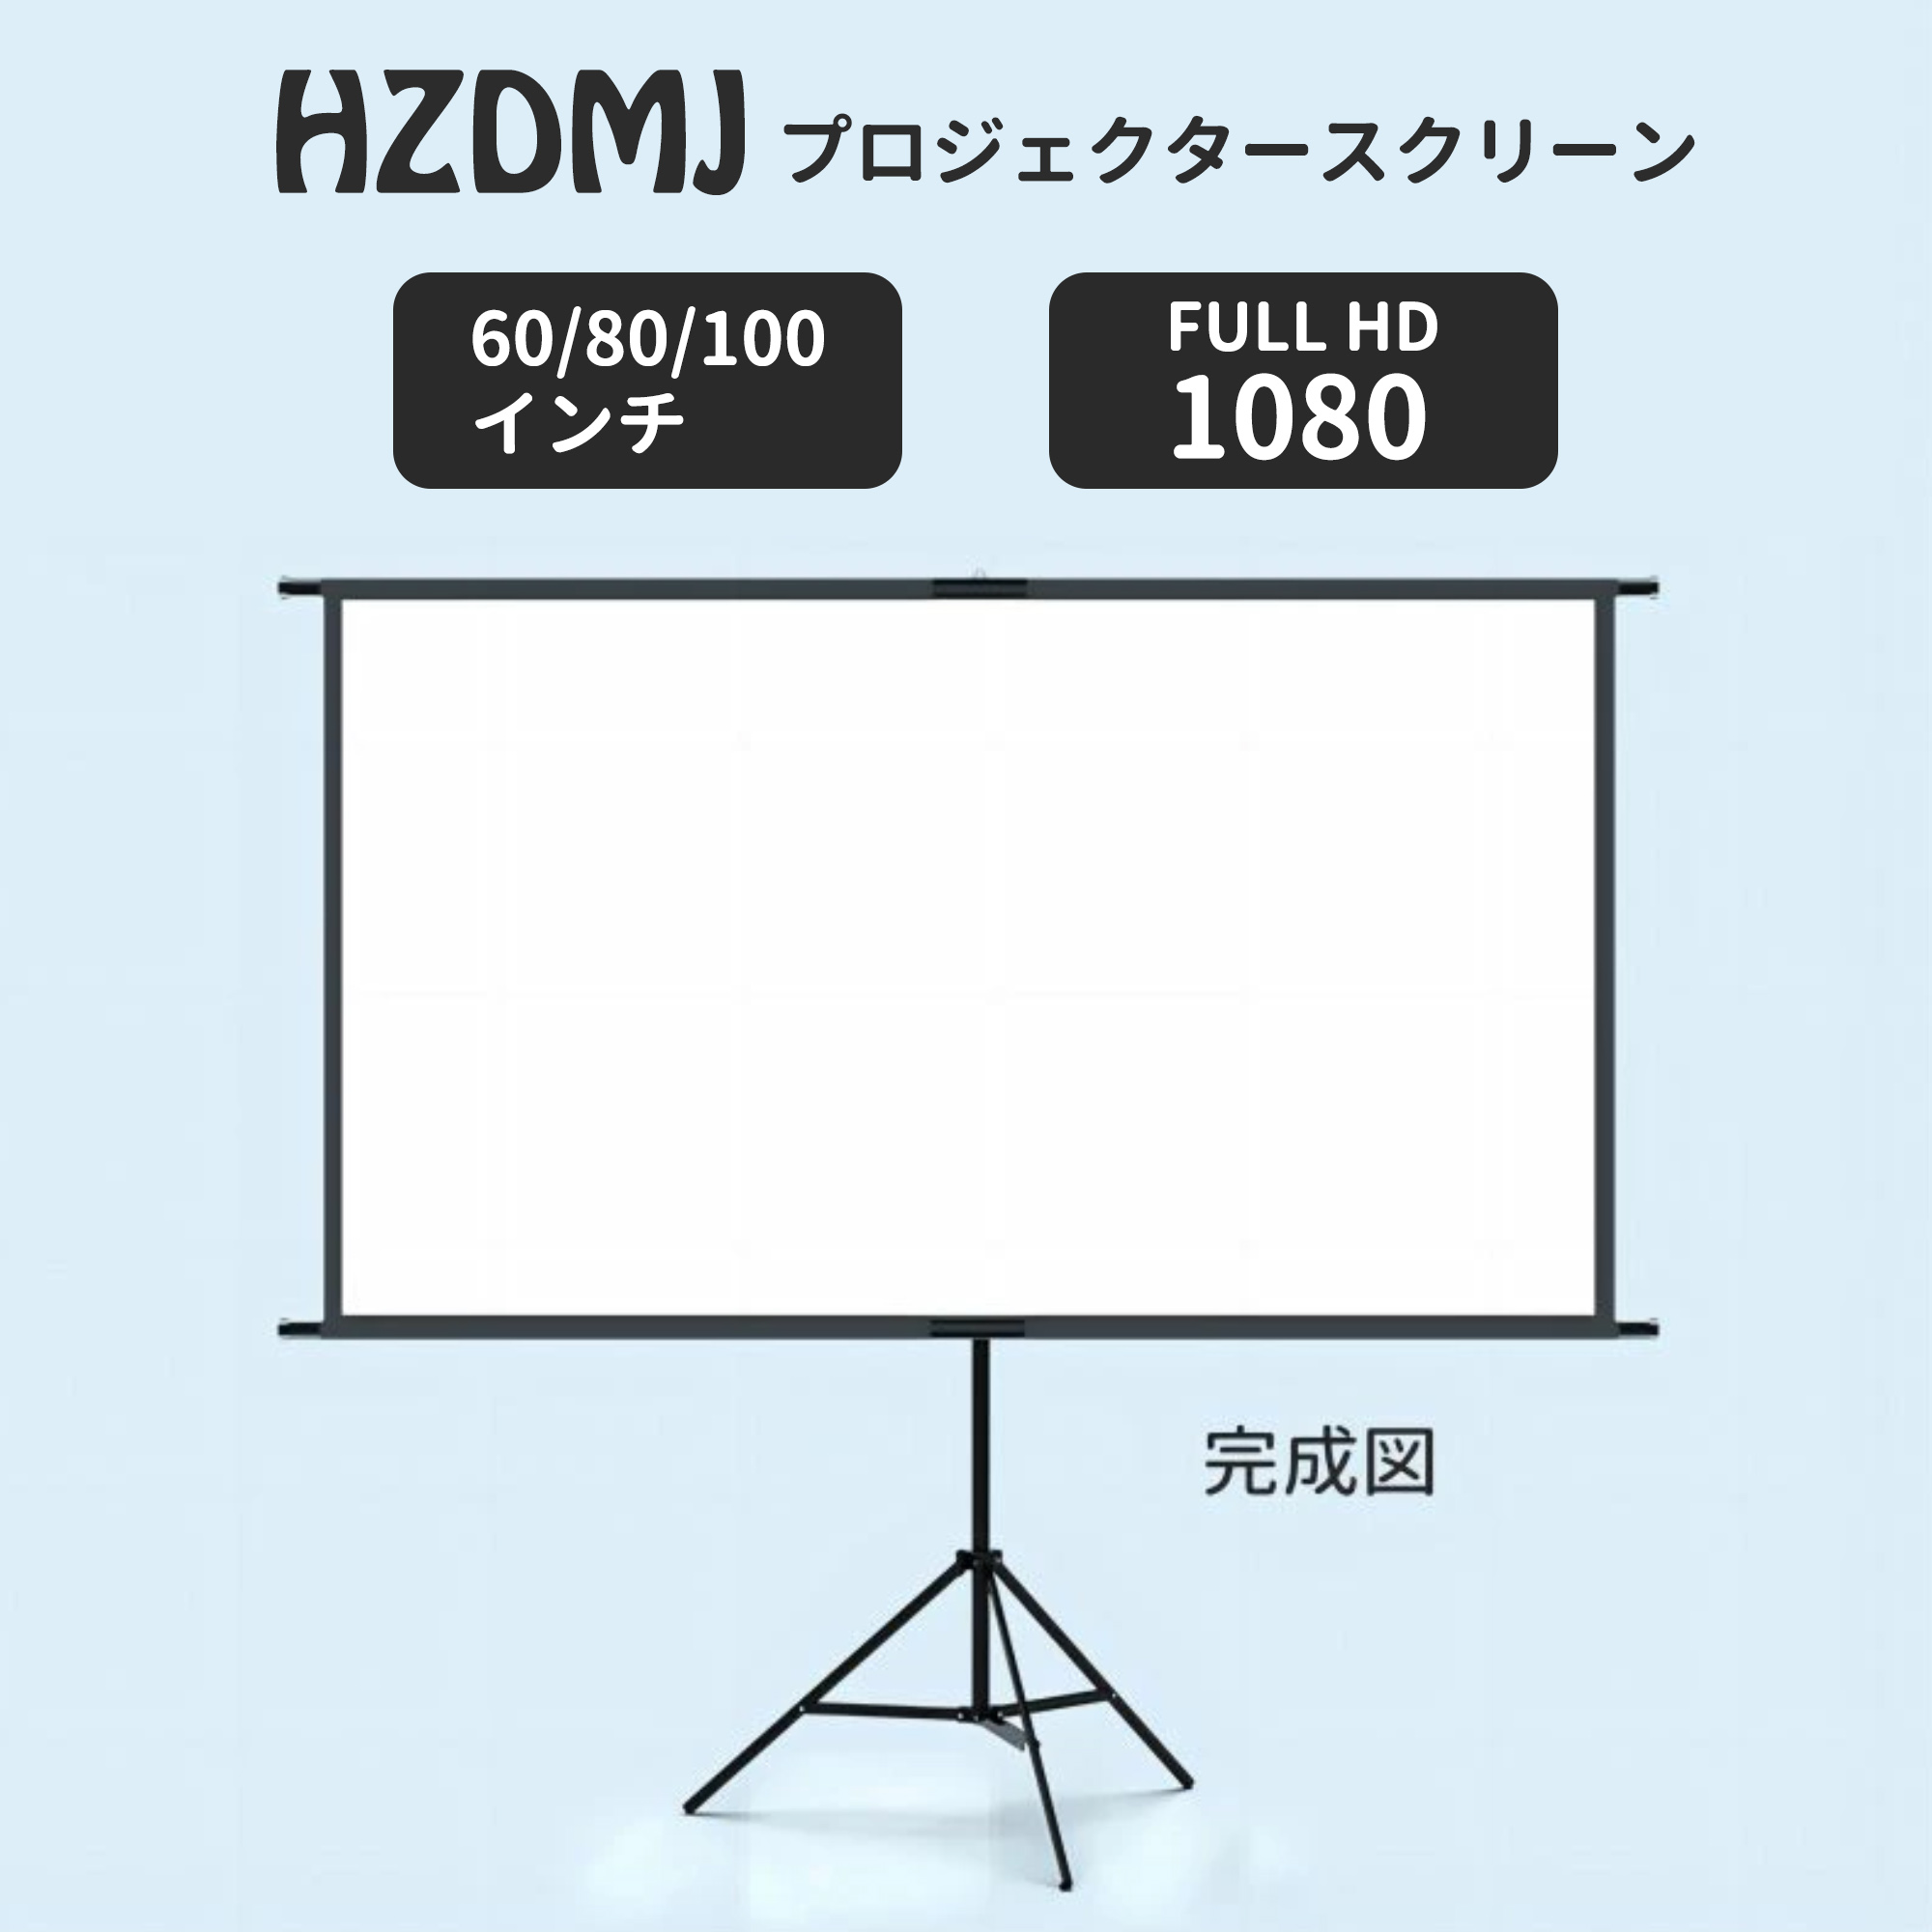 HZDMJ проектор экран 2in1 независимый тип портативный штатив тип складной 2 год гарантия 60 дюймовый 80 дюймовый 100 дюймовый 16:9 большой экран . индустрия пол класть место хранения 4K орнамент 